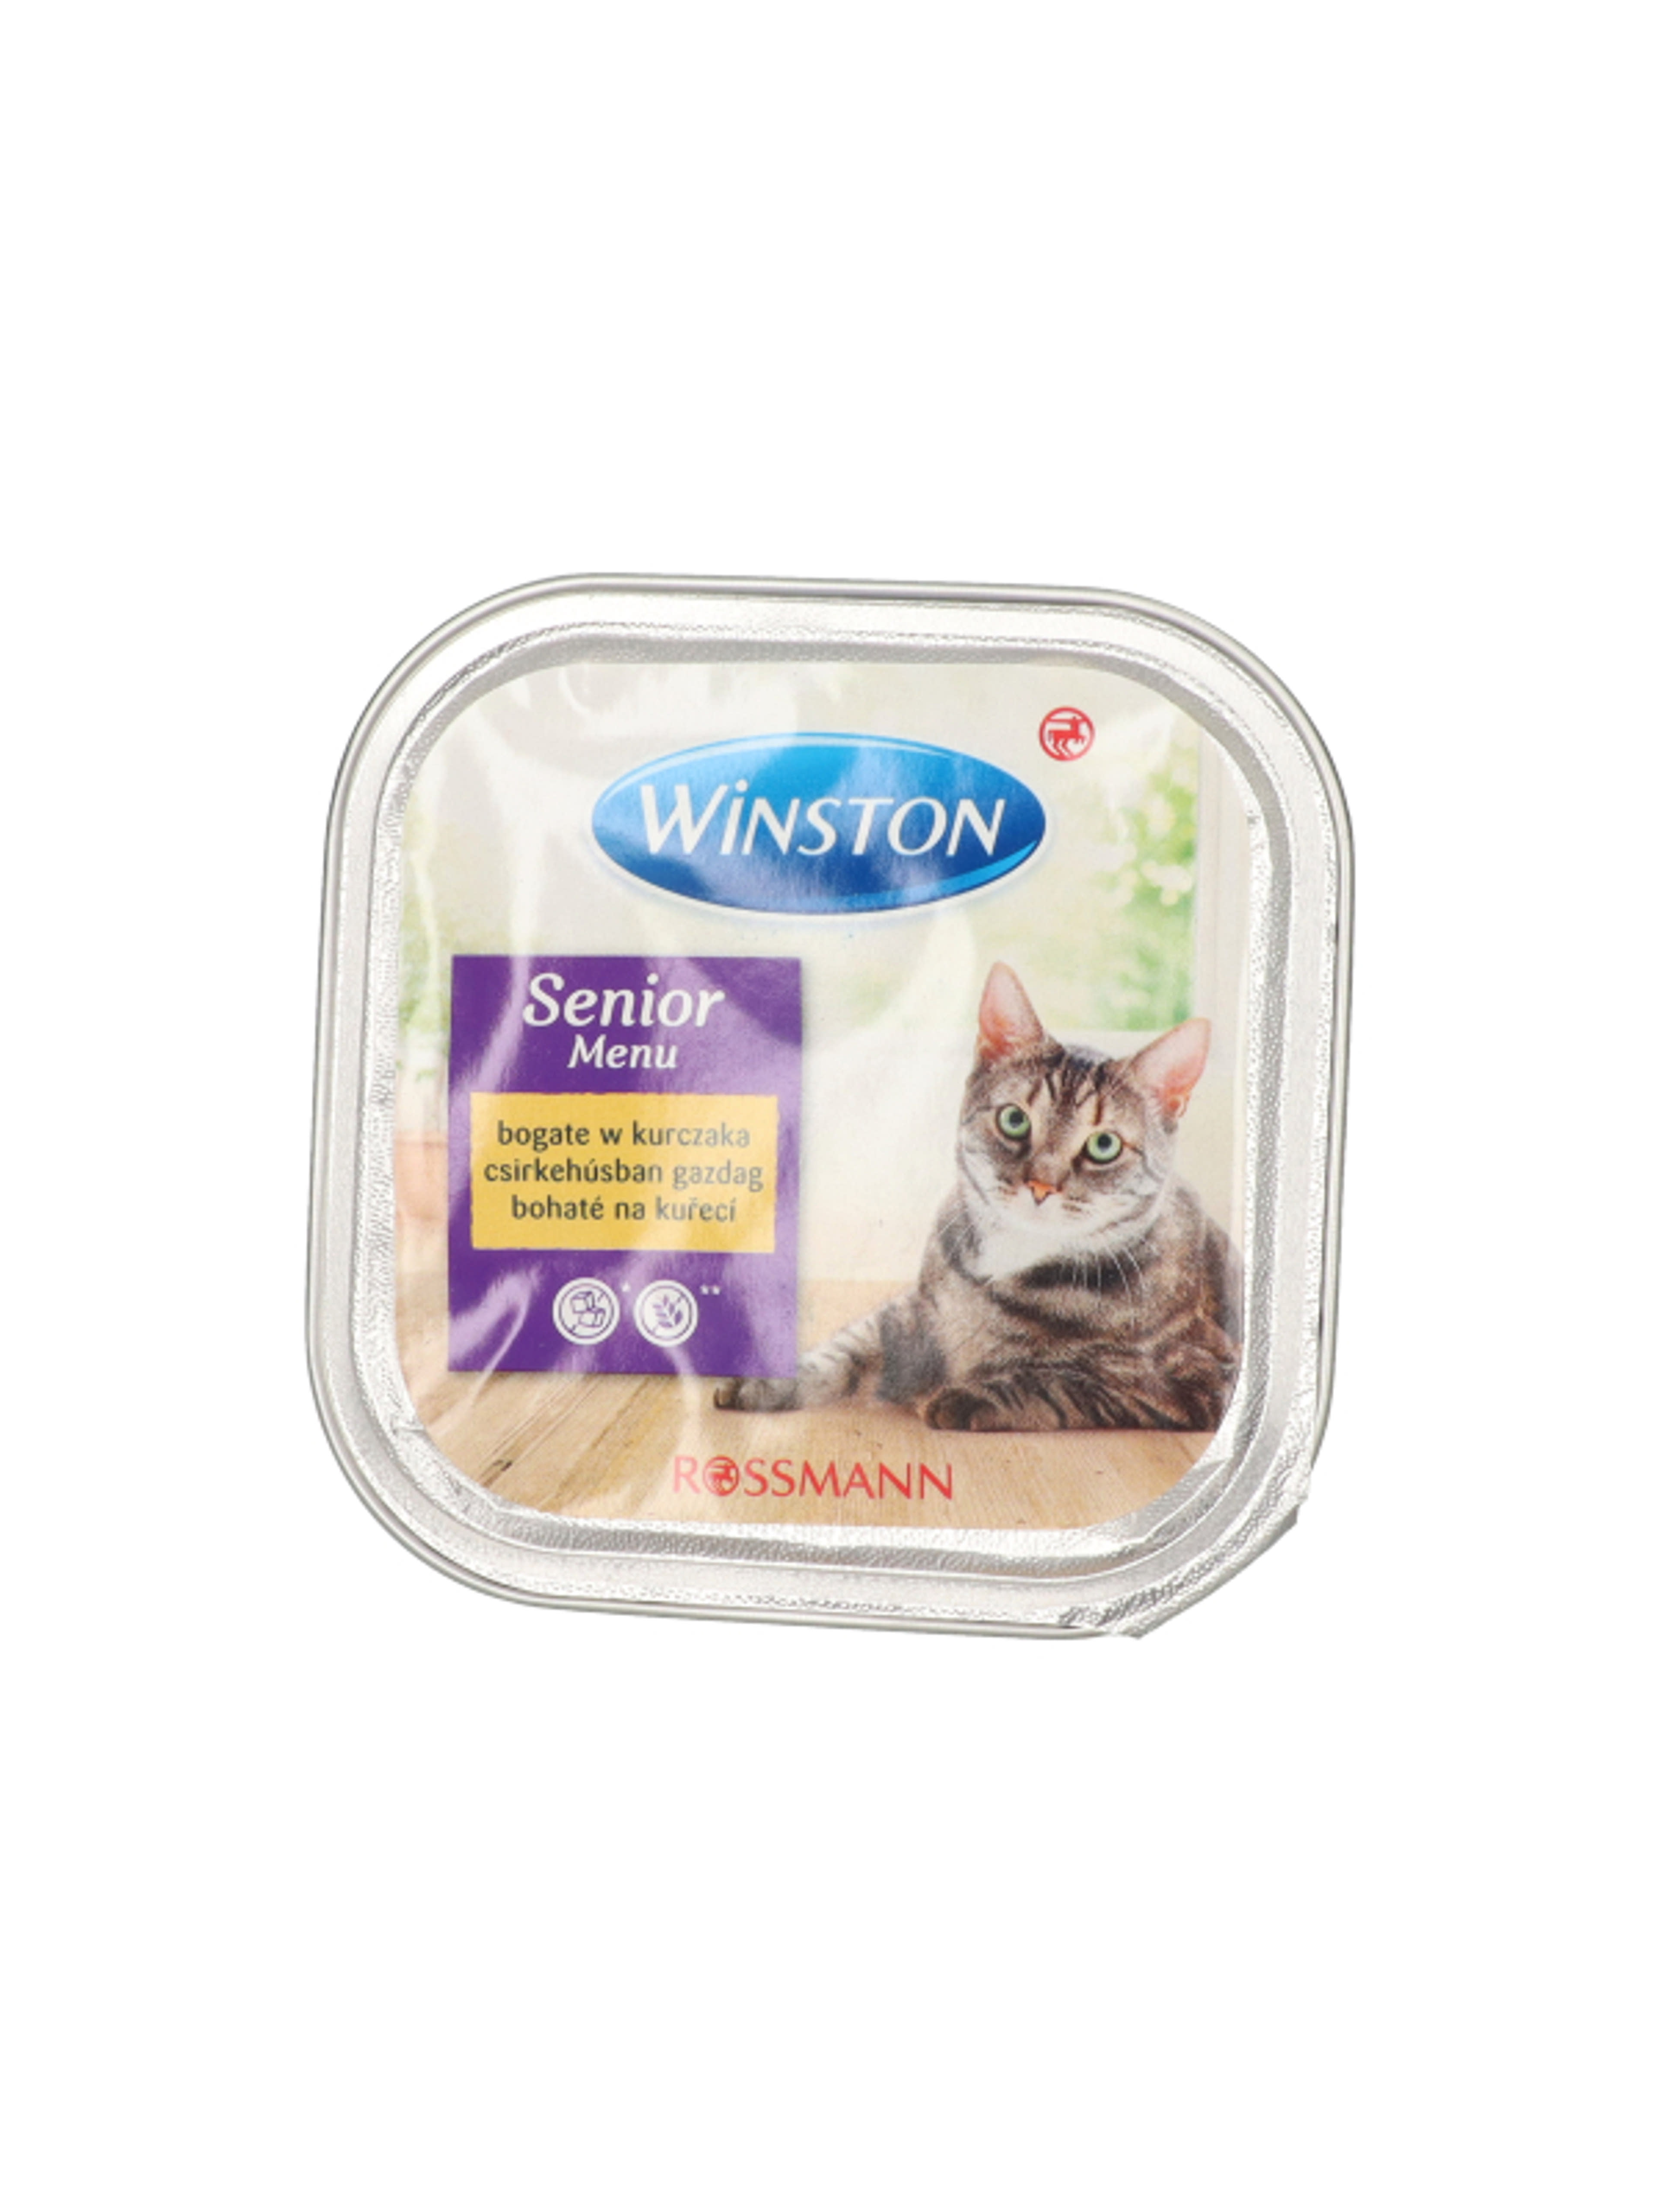 Winston Fenséges Menü alutál macskáknak, csirkehússal - 100 g-4